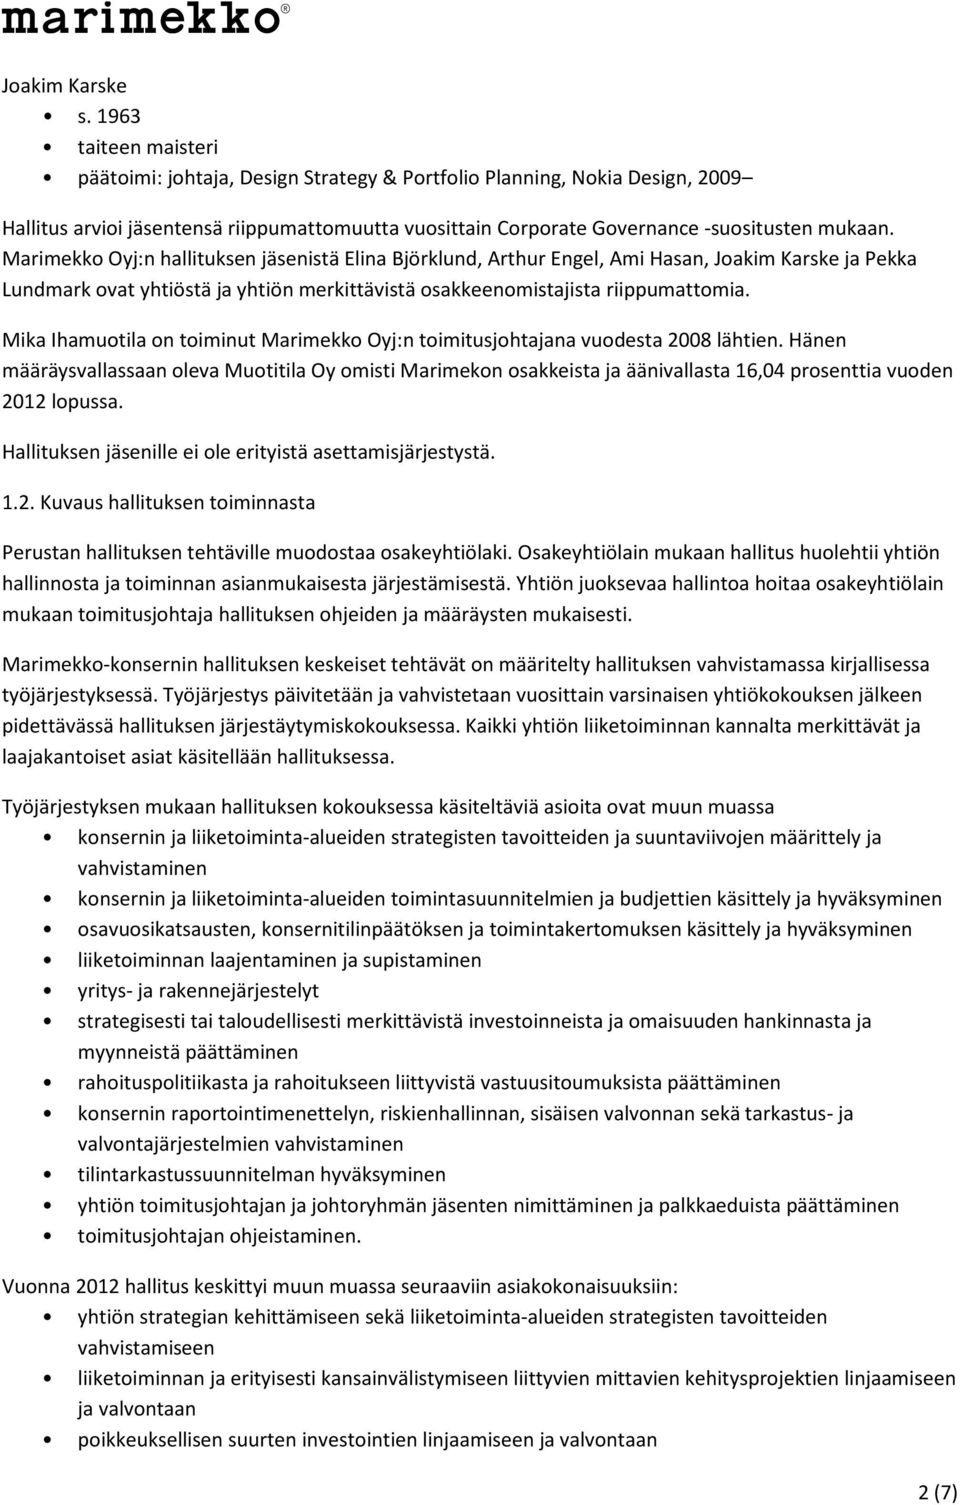 Marimekko Oyj:n hallituksen jäsenistä Elina Björklund, Arthur Engel, Ami Hasan, Joakim Karske ja Pekka Lundmark ovat yhtiöstä ja yhtiön merkittävistä osakkeenomistajista riippumattomia.